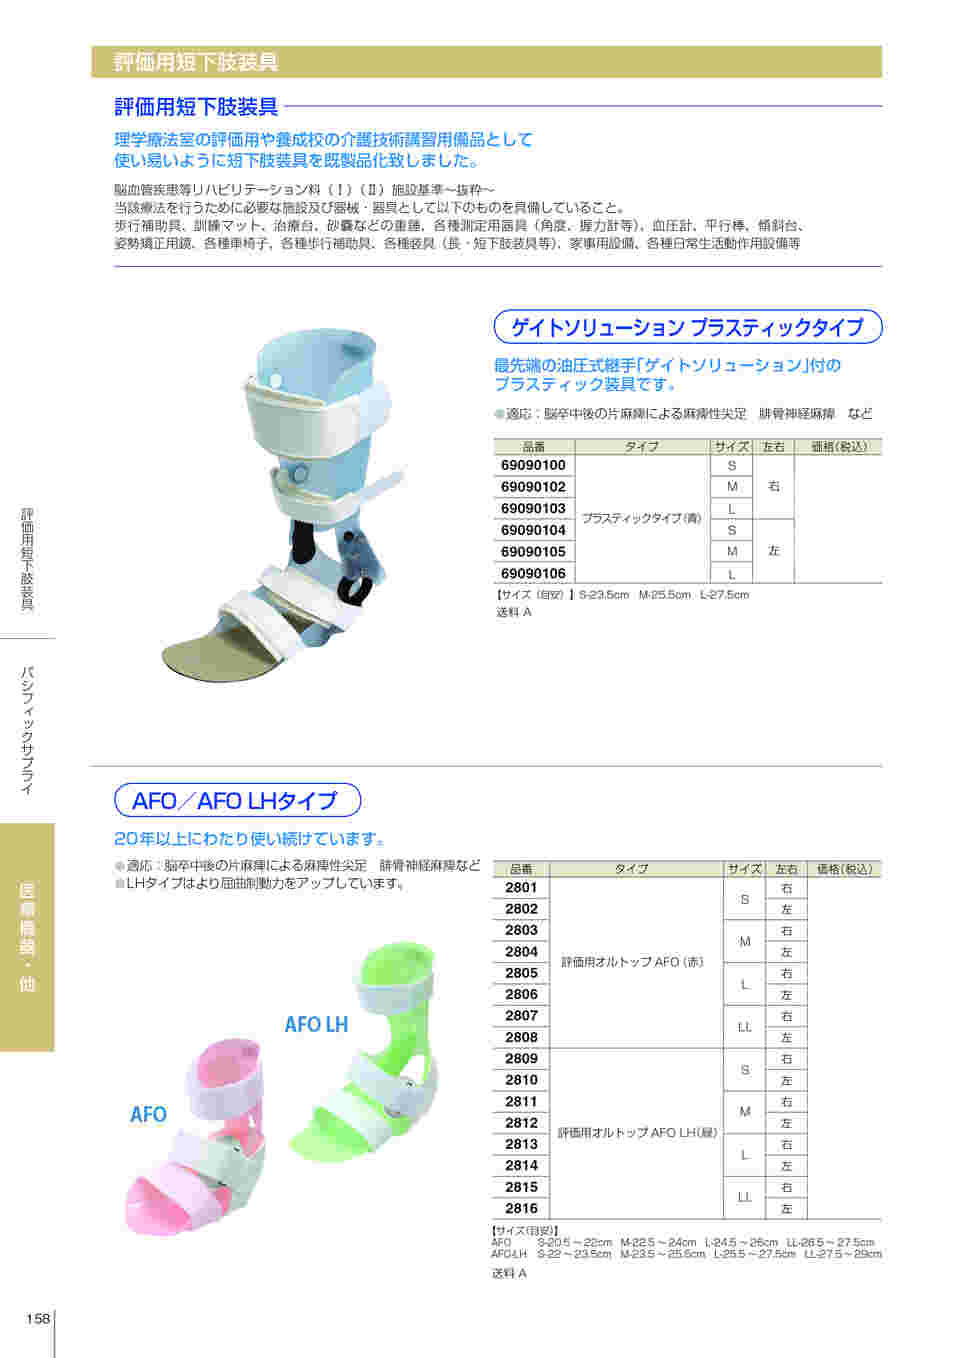 短下肢装具 オルトップAFO LH 左Sサイズ - 看護/介護用品